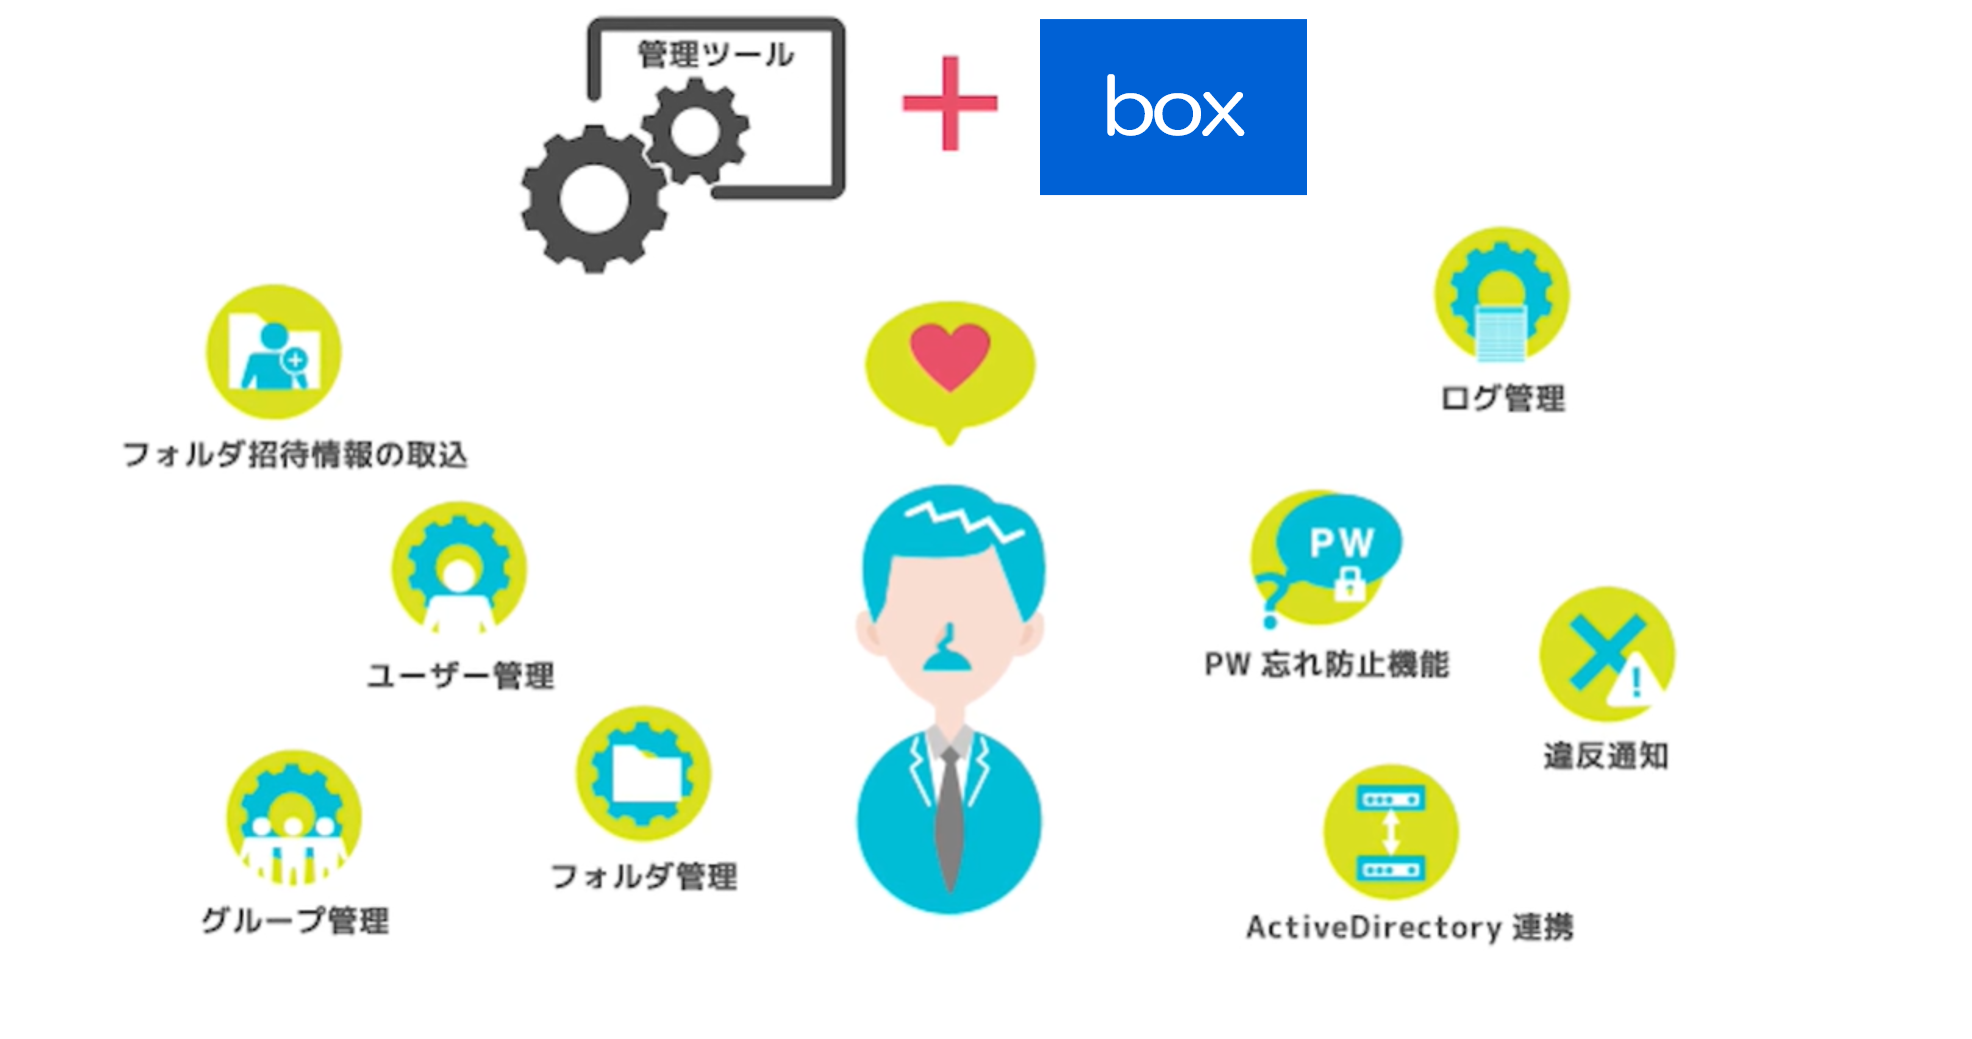 Nttコミュニケーションズのクラウドストレージサービス Box で管理者の業務を効率化する新オプション Box 管理クラウド が開始 Nttコミュニケーションズ株式会社のプレスリリース